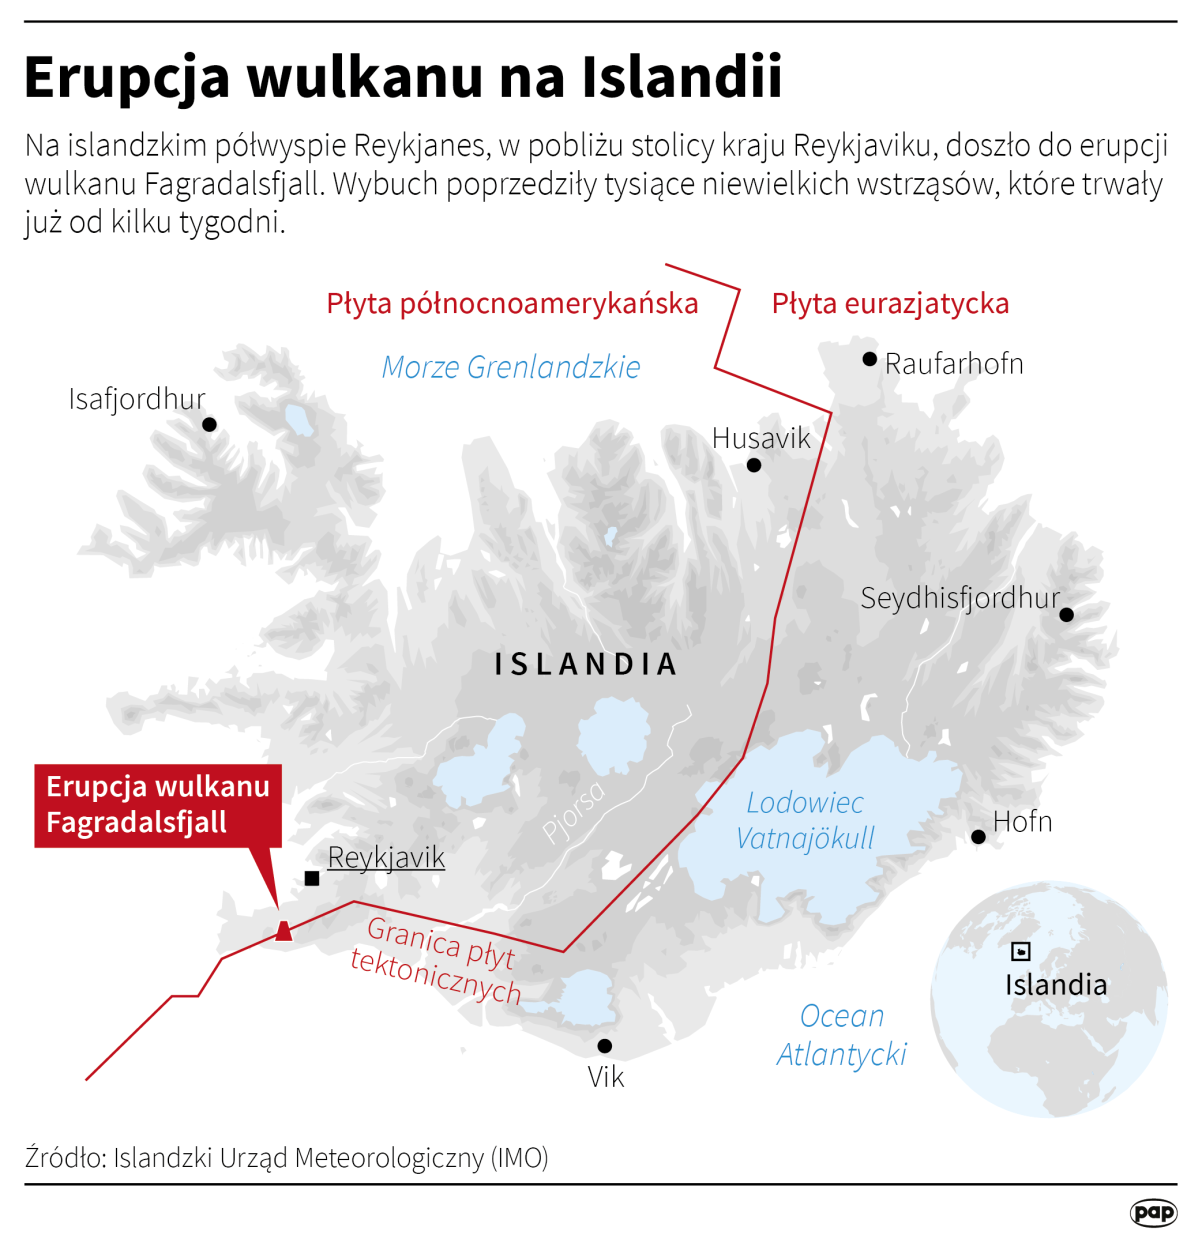 Erupcja wulkanu na Islandii Autor Maciej Zieliński